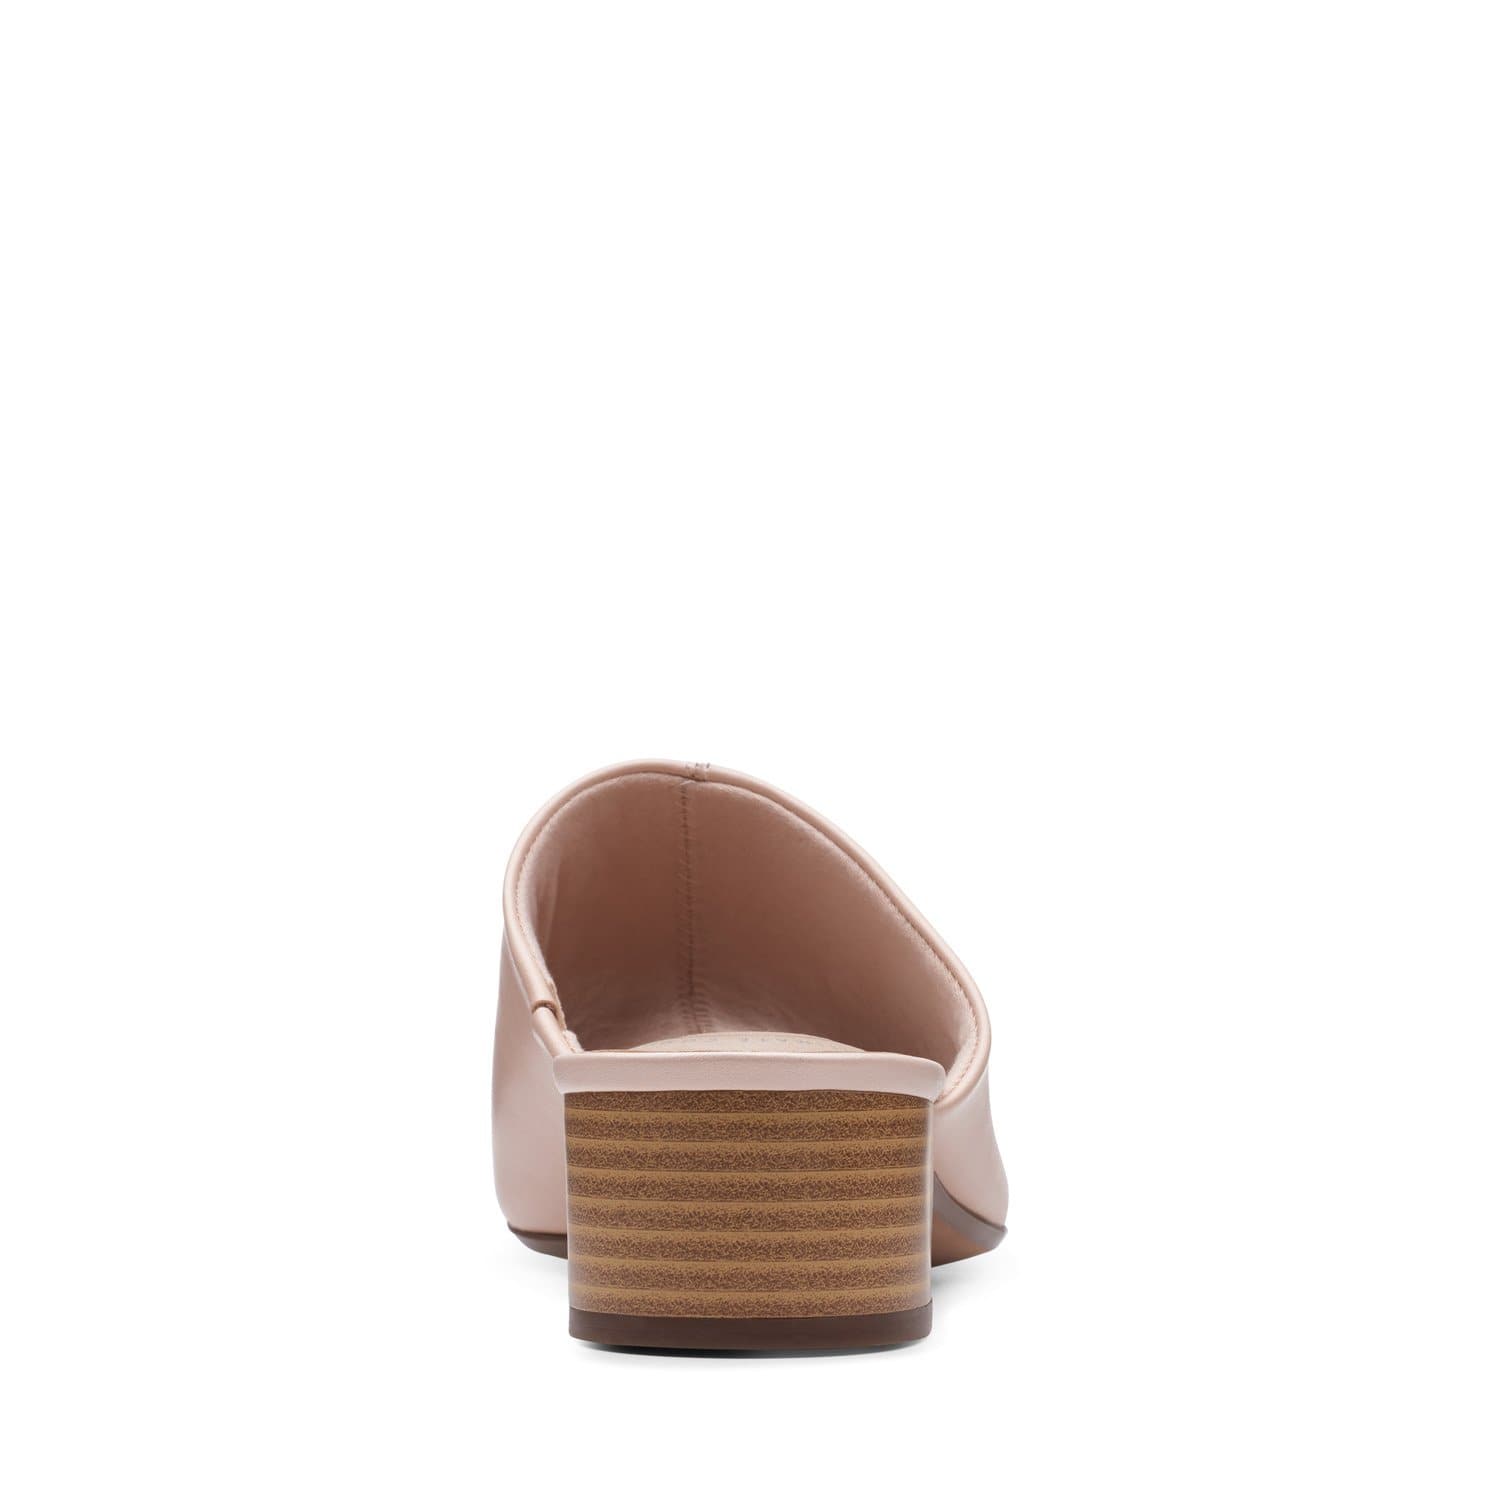 Clarks Elisa Rose - Sandals - Blush Leather - 261501134 - D Width (Standard Fit)